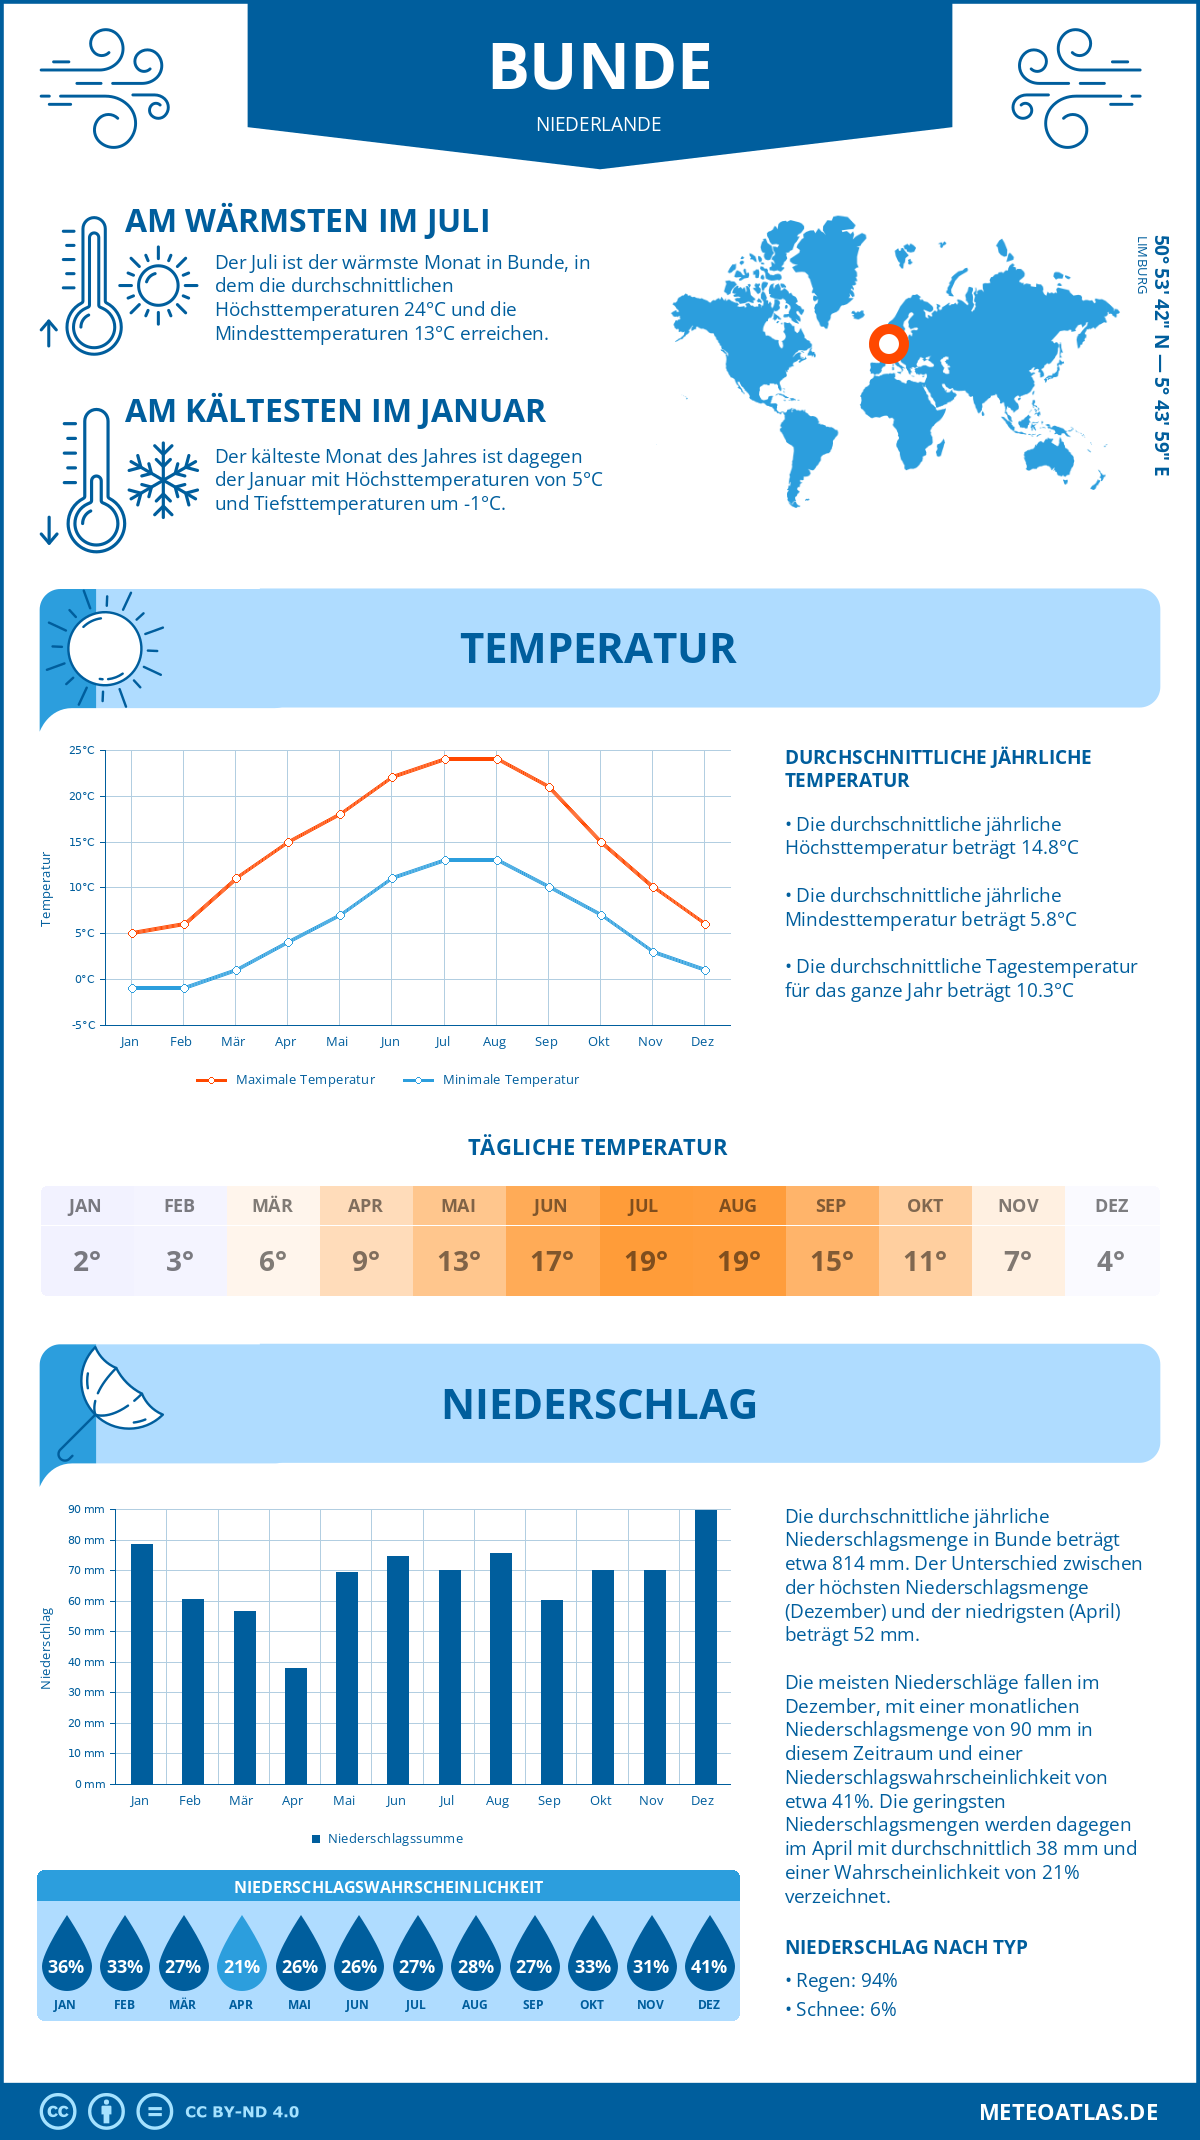 Wetter Bunde (Niederlande) - Temperatur und Niederschlag